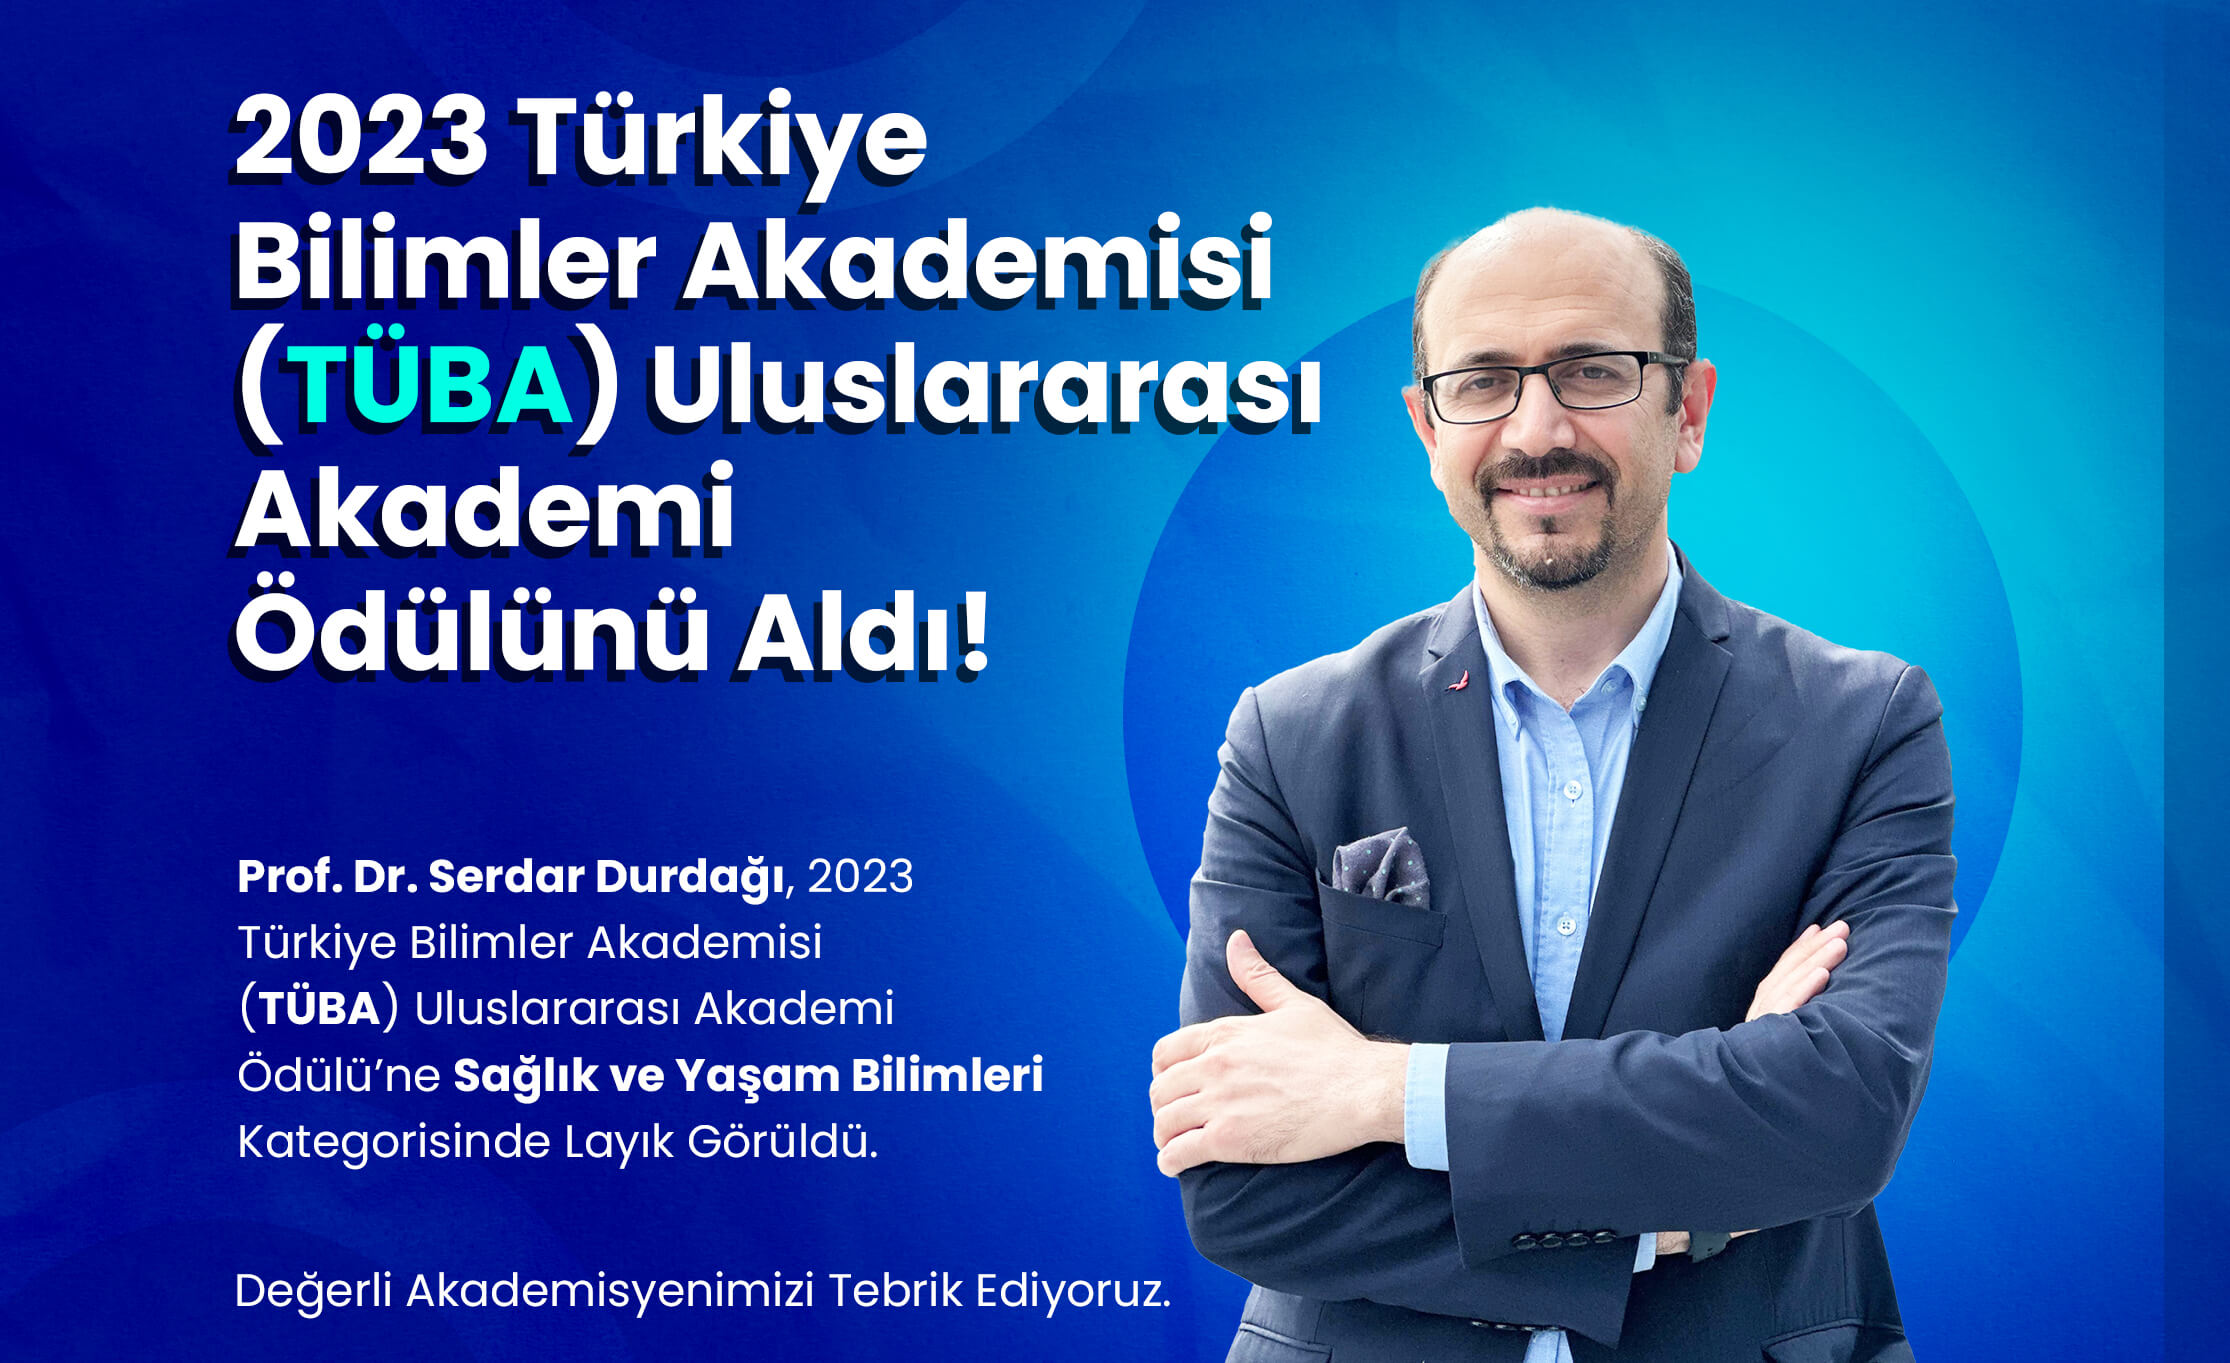 Prof. Dr. Serdar Durdağı, 2023 Türkiye Bilimler Akademisi (TÜBA) Uluslararası Akademi Ödülünü Aldı!